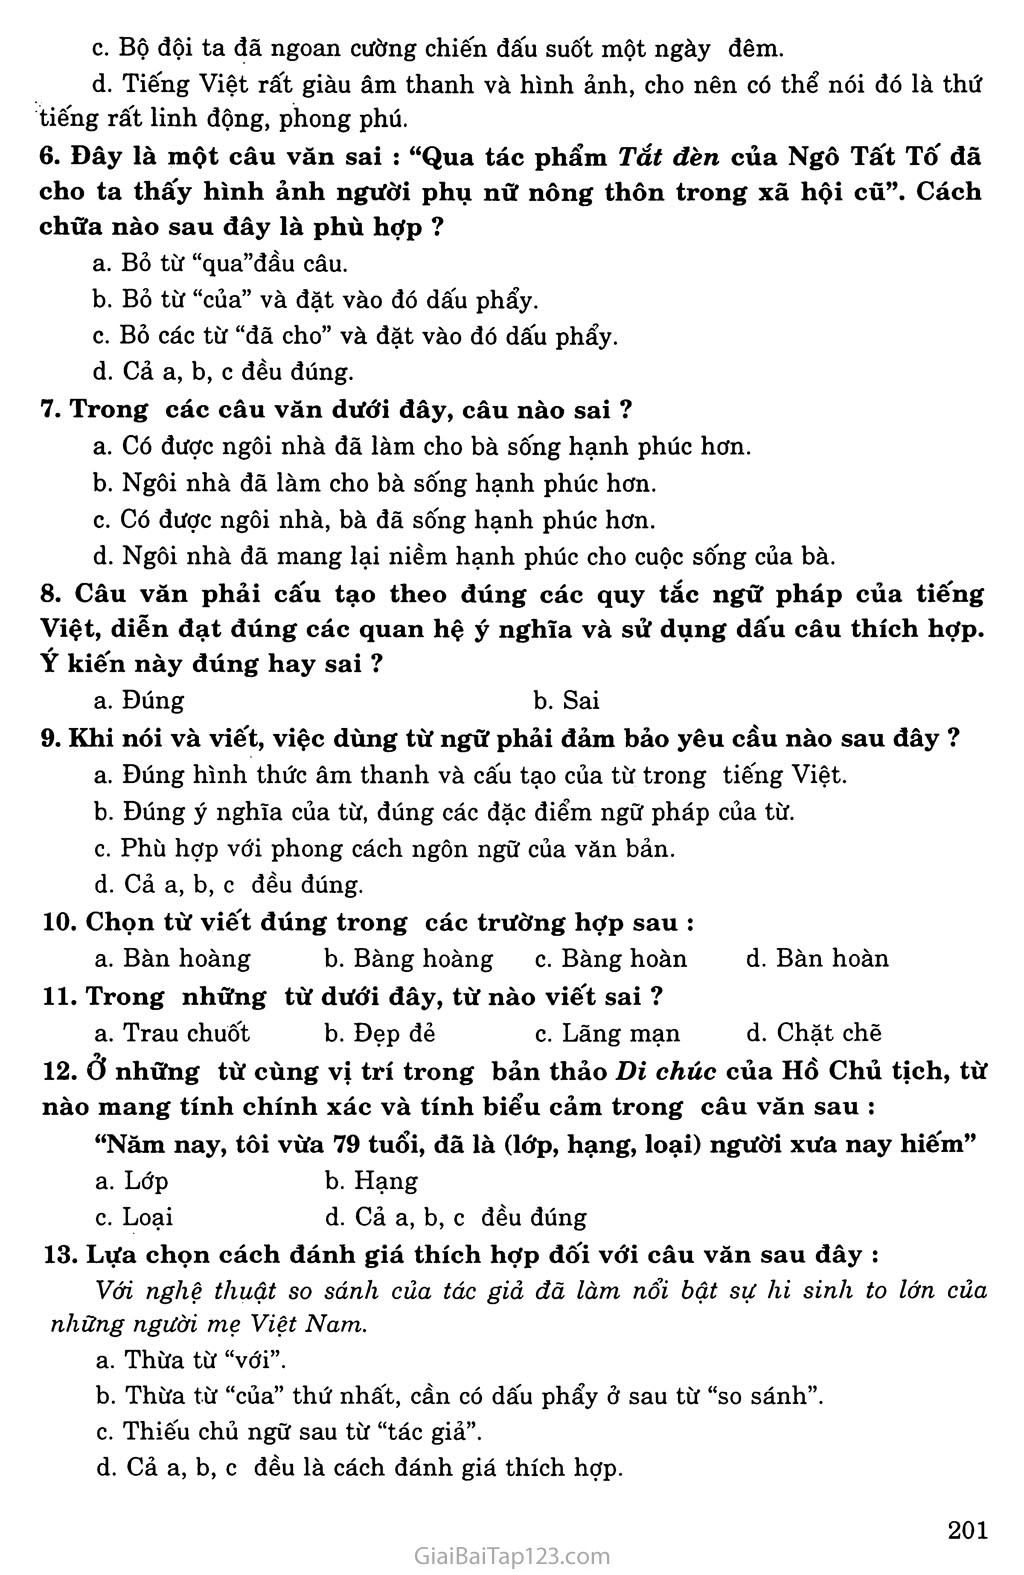 Những yêu cầu về sử dụng Tiếng Việt trang 3